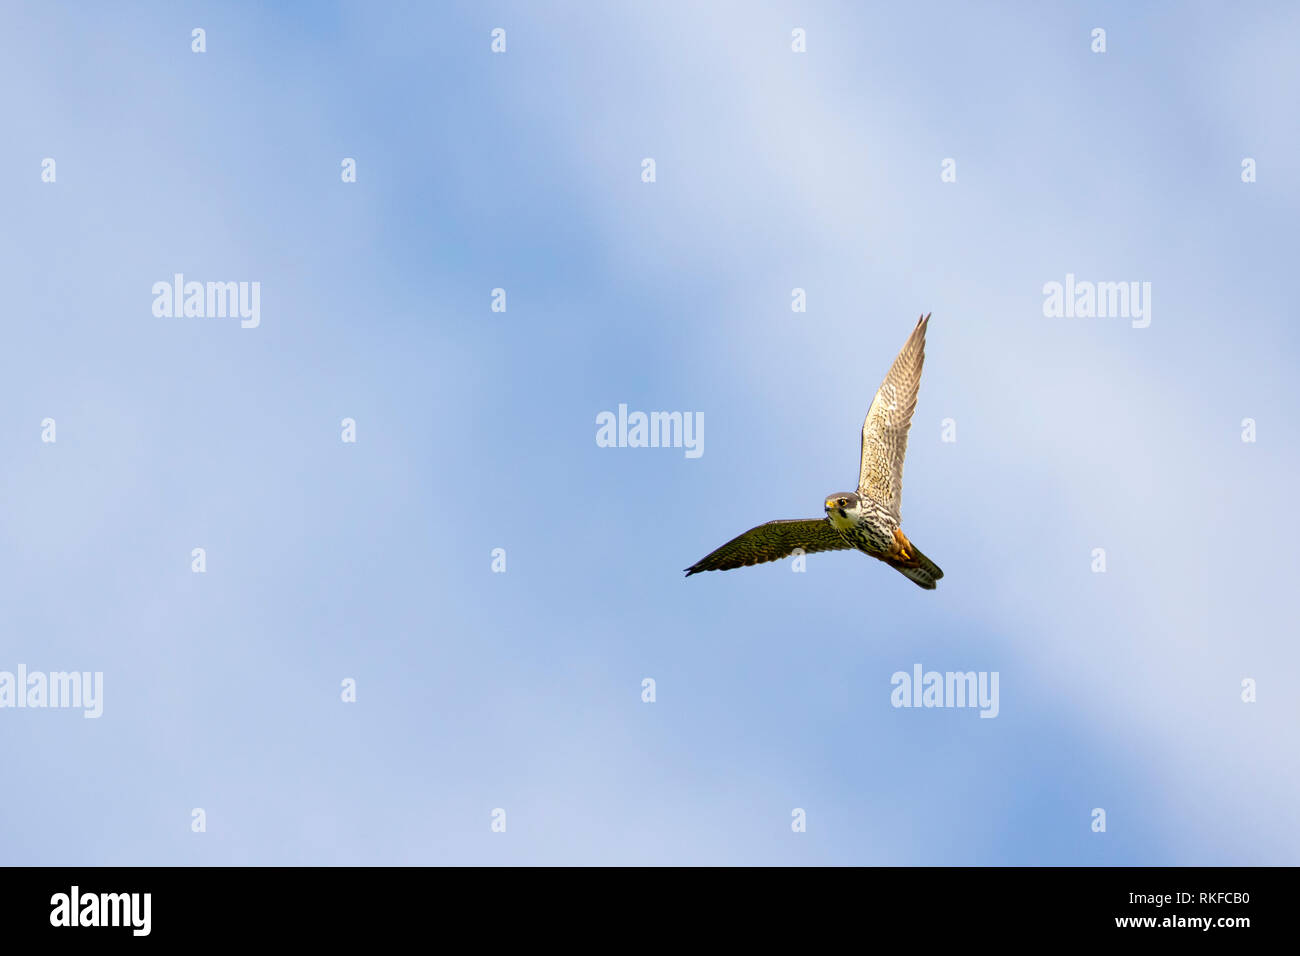 Eurasischen Hobby, Falco subbuteo im Flug mit blauem Himmel und weißen Wolken im Hintergrund Stockfoto